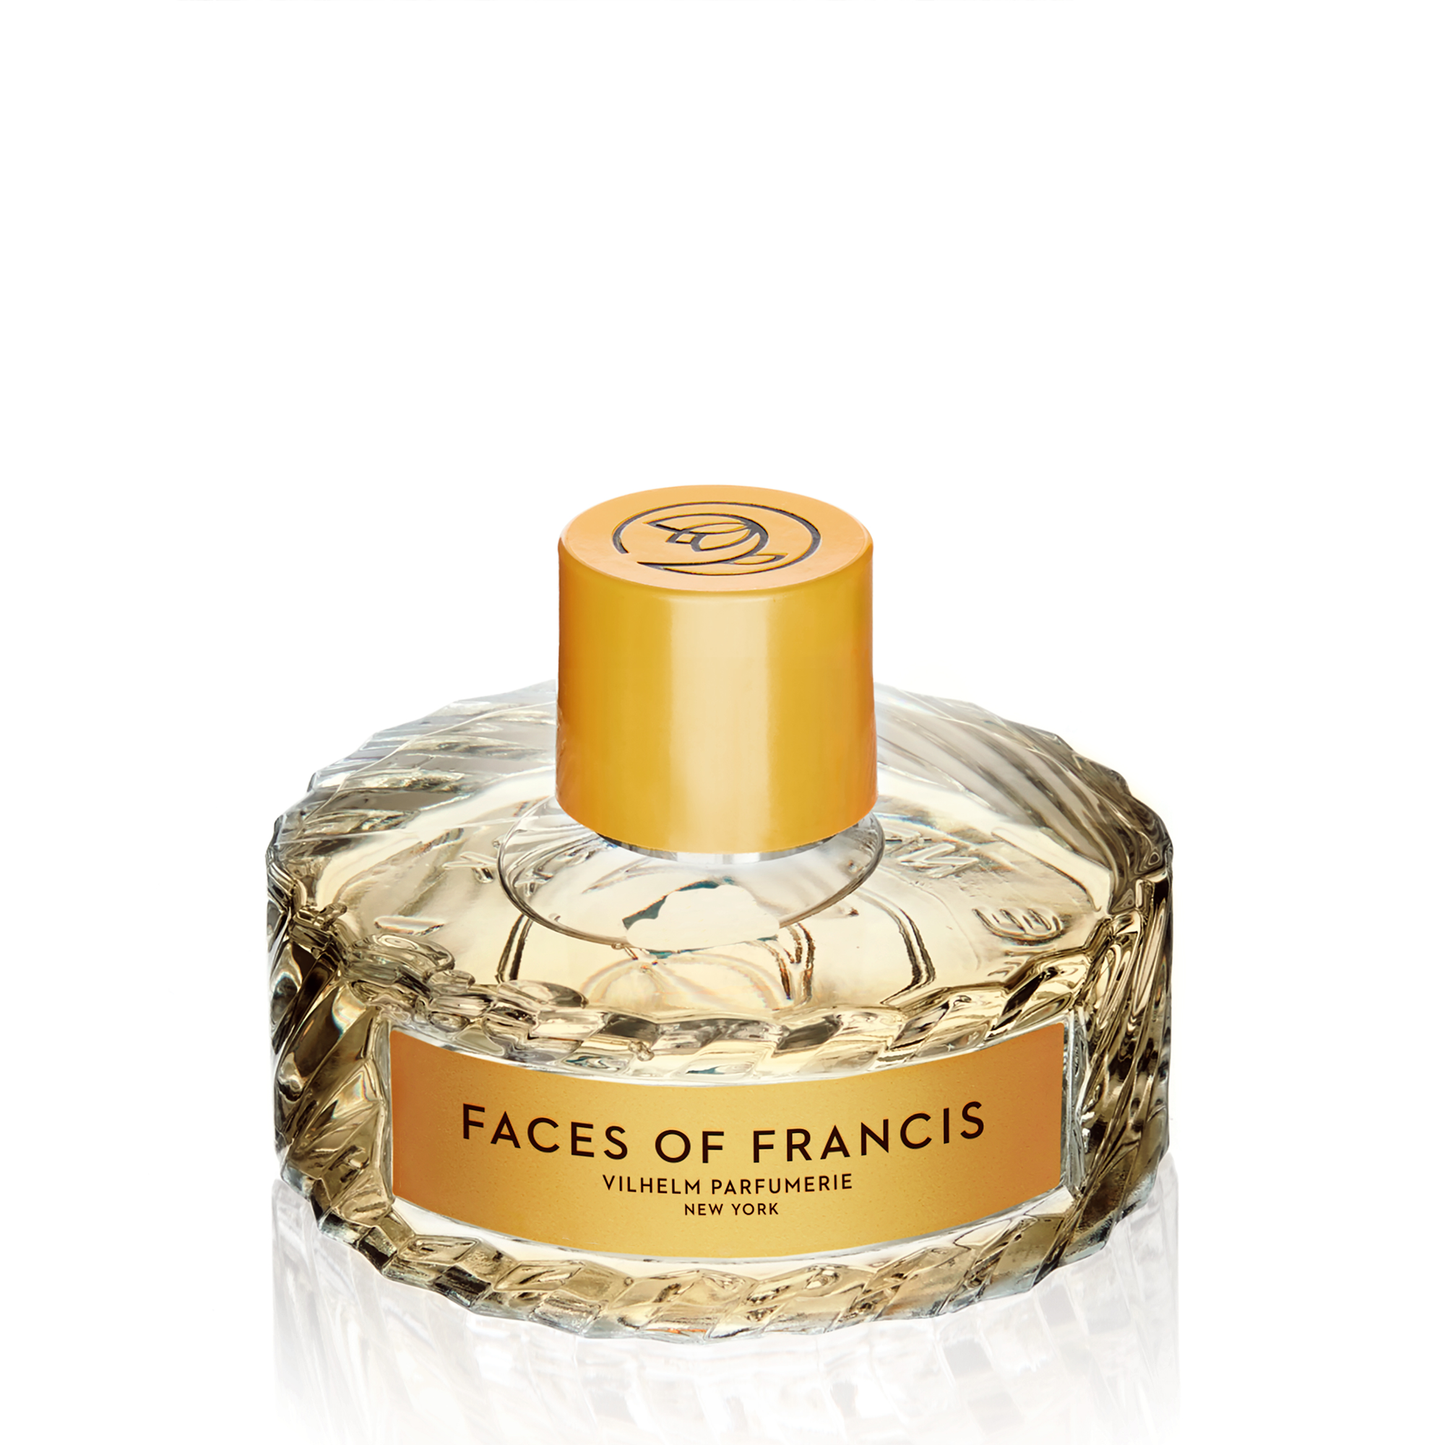 Faces of Francis Eau de Parfum